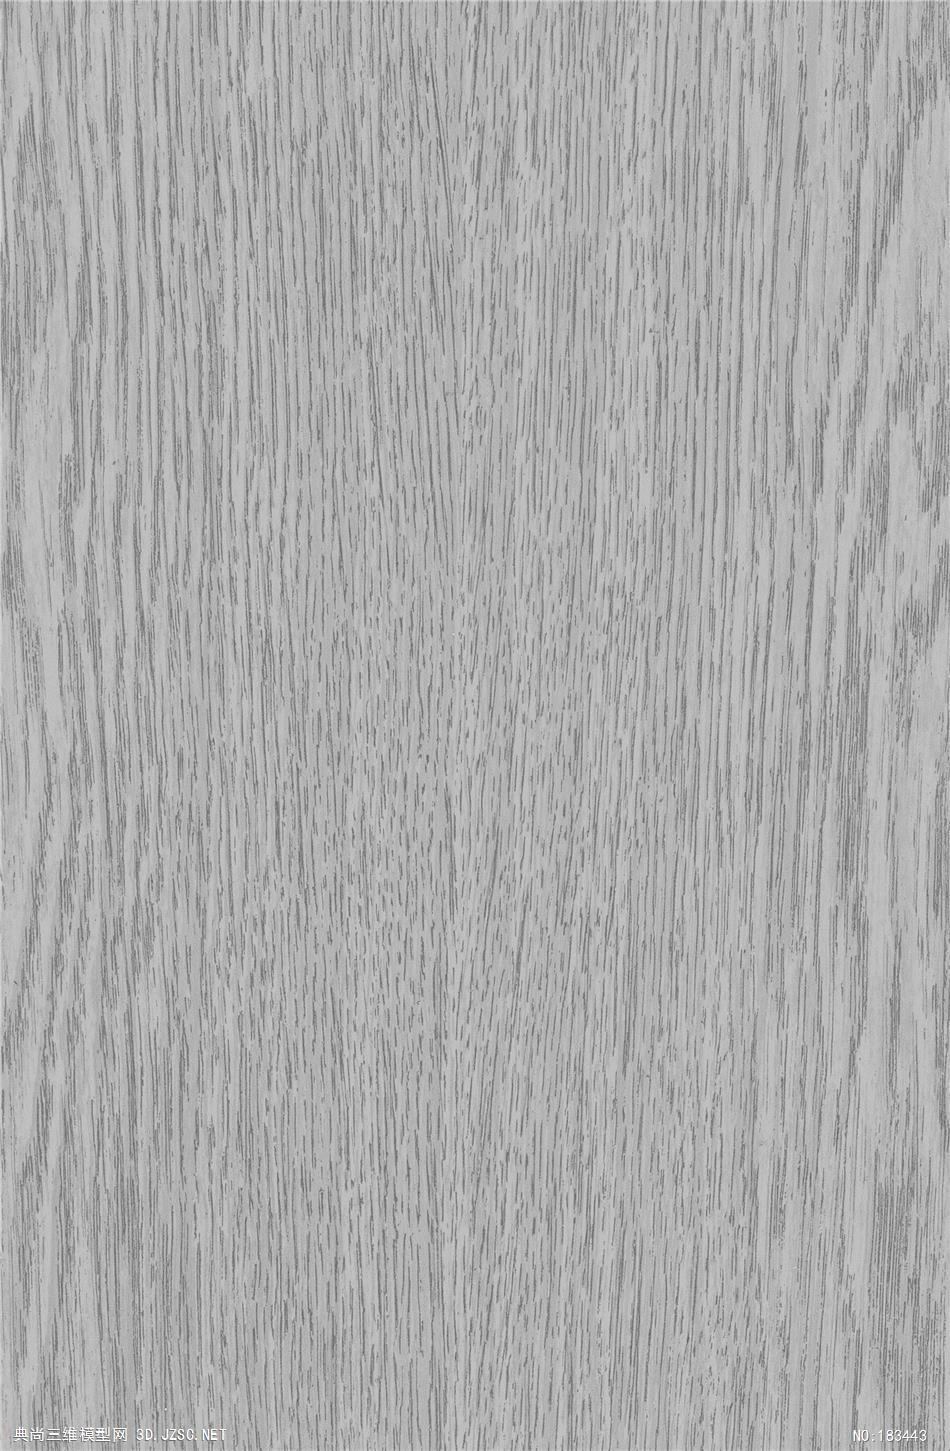 vary材质球chenenaturel木木纹木地板材质贴图